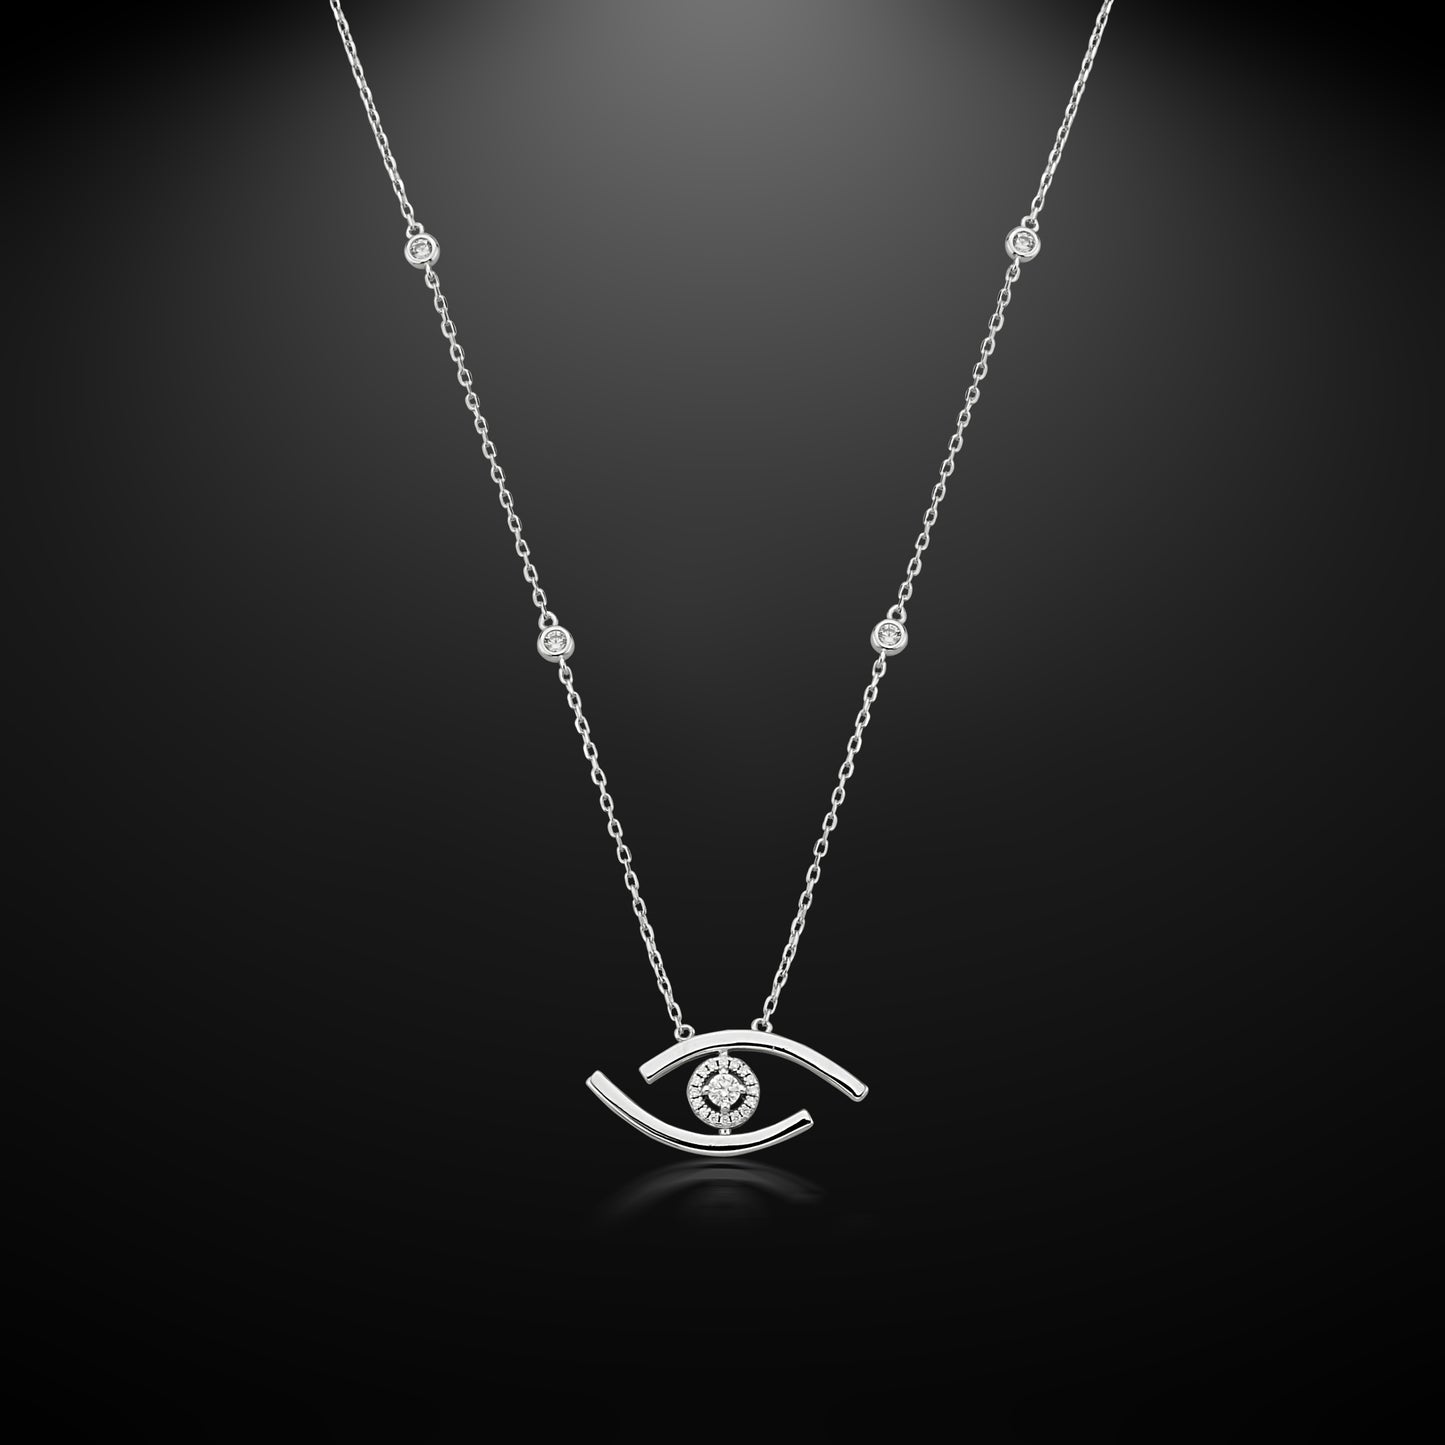 Bequasa Crystallic Eyes Halskette, Silber 925, Rhodiniert